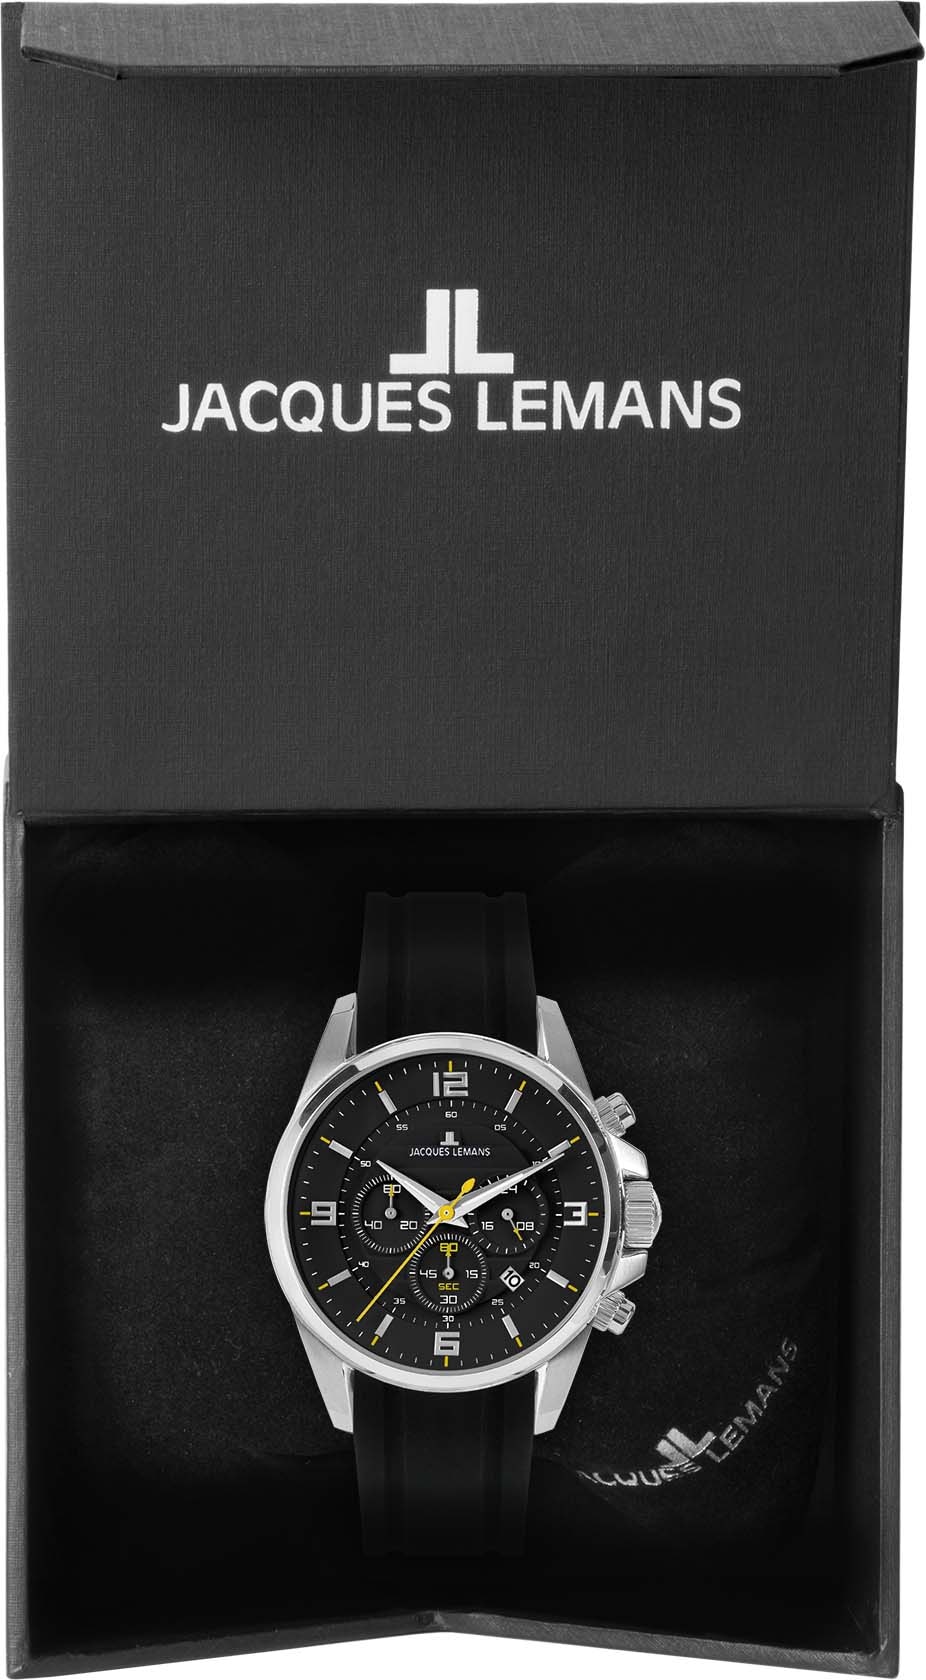 Chronograph Jacques »Liverpool 1-2118A« Lemans